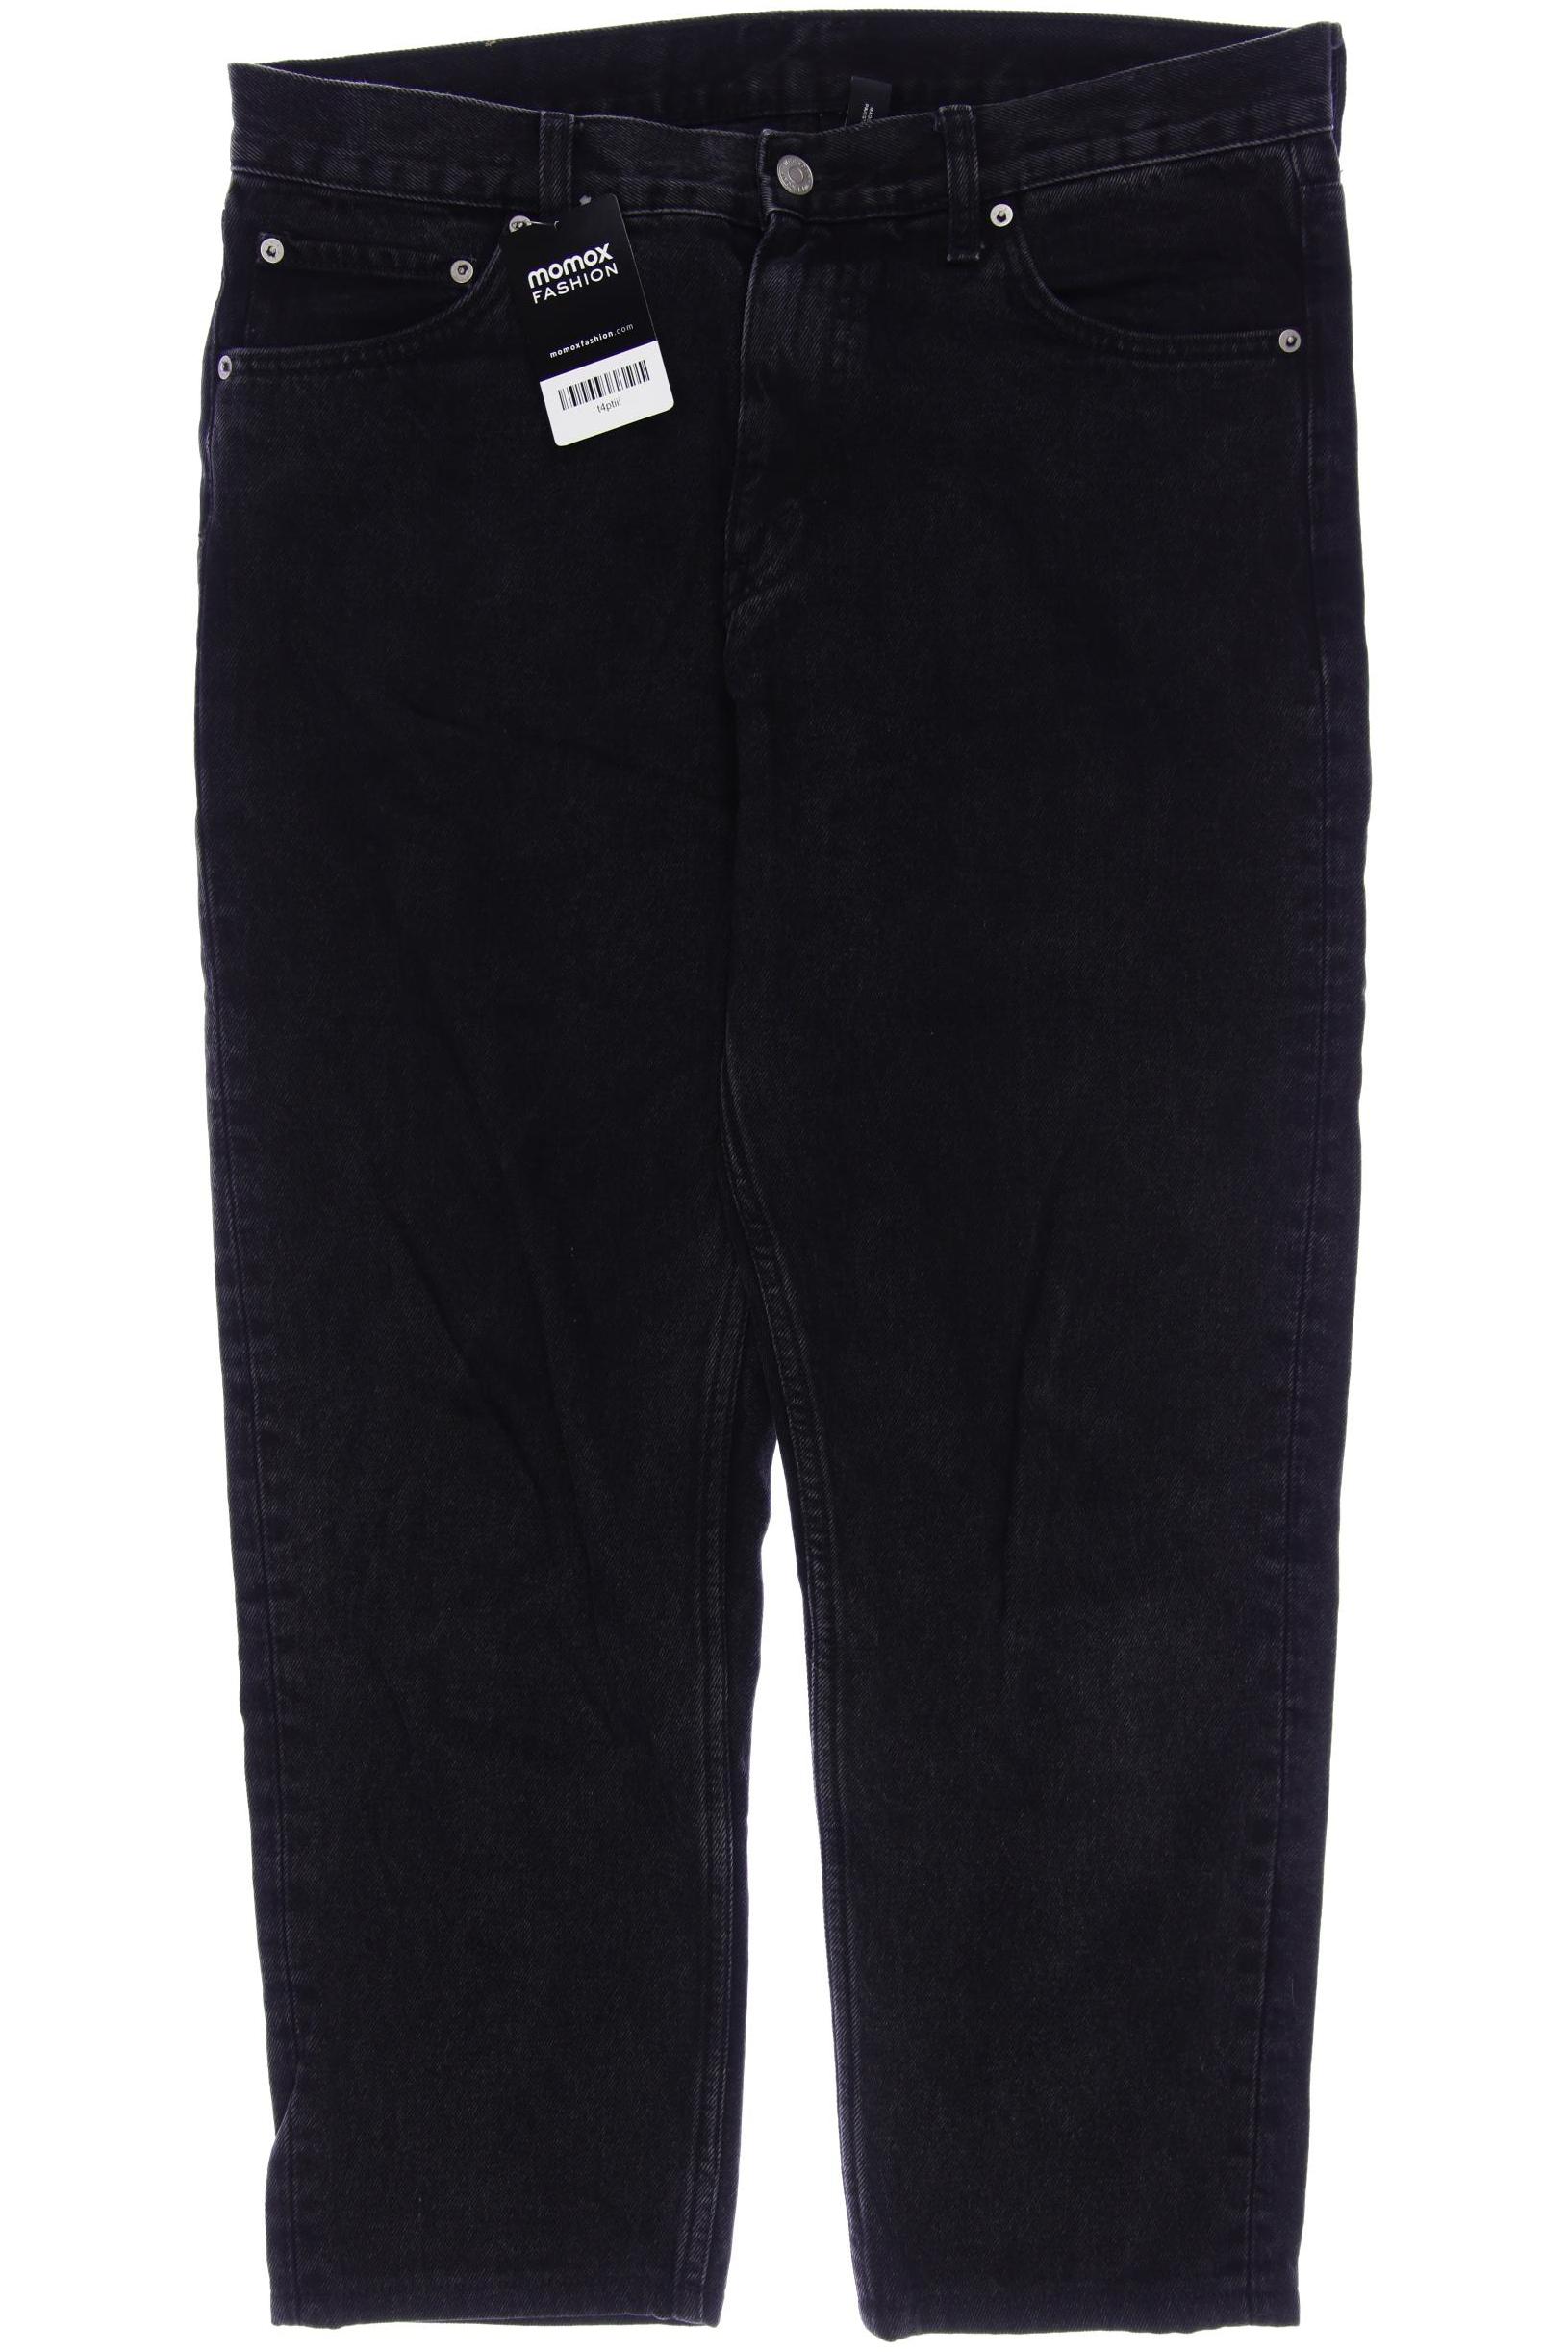 Weekday Herren Jeans, schwarz, Gr. 48 von Weekday